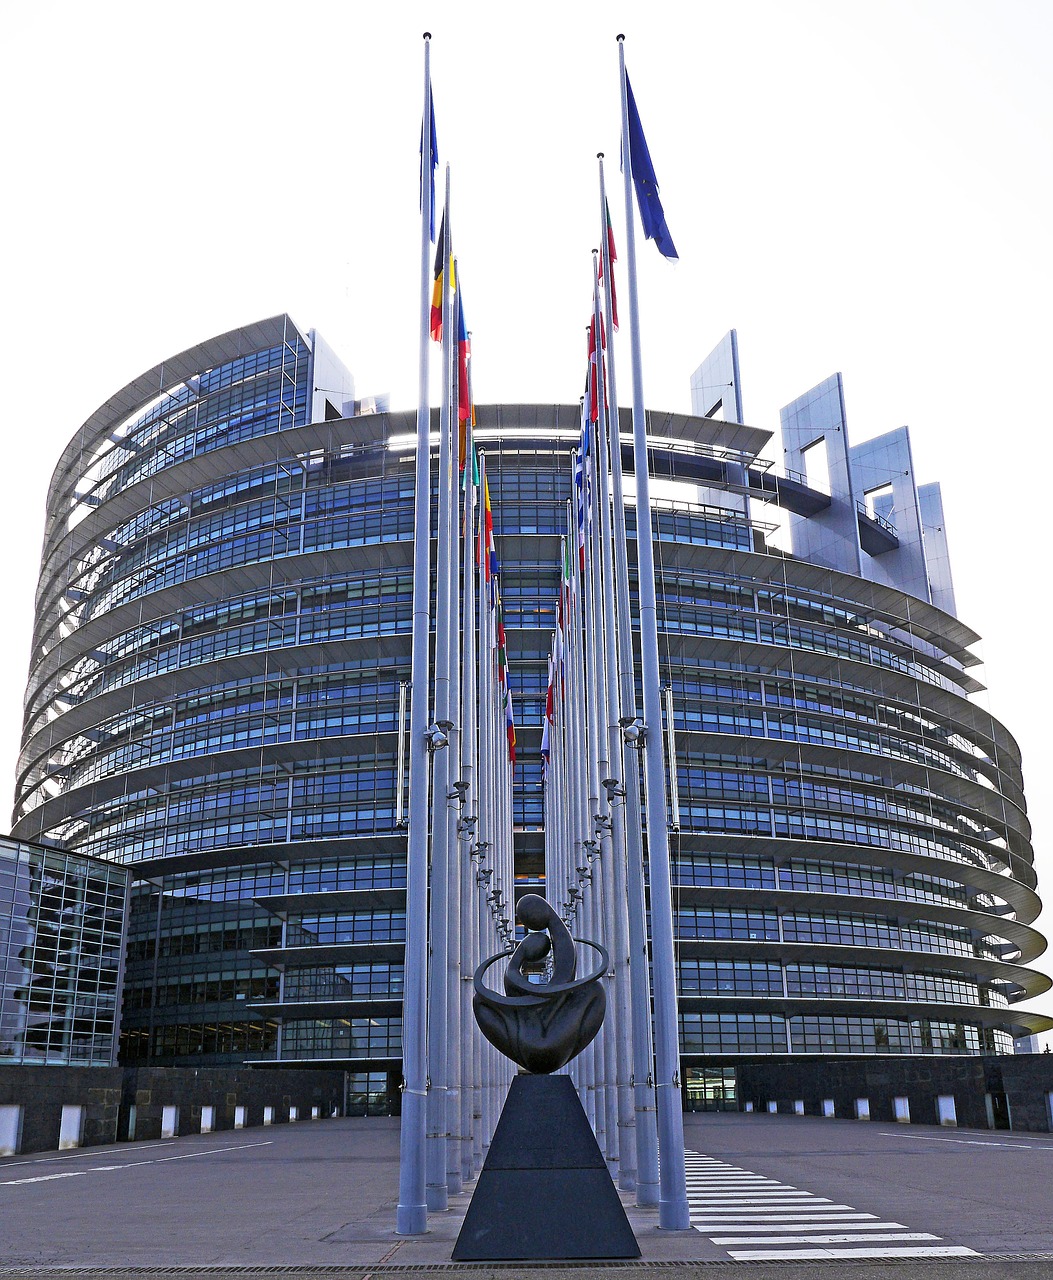 Europos Parlamentas, Strasbourg, Architektūra, Parlamentas, Eu, Europos Sąjunga, Ue, Rotunda, France, Lankytinos Vietos